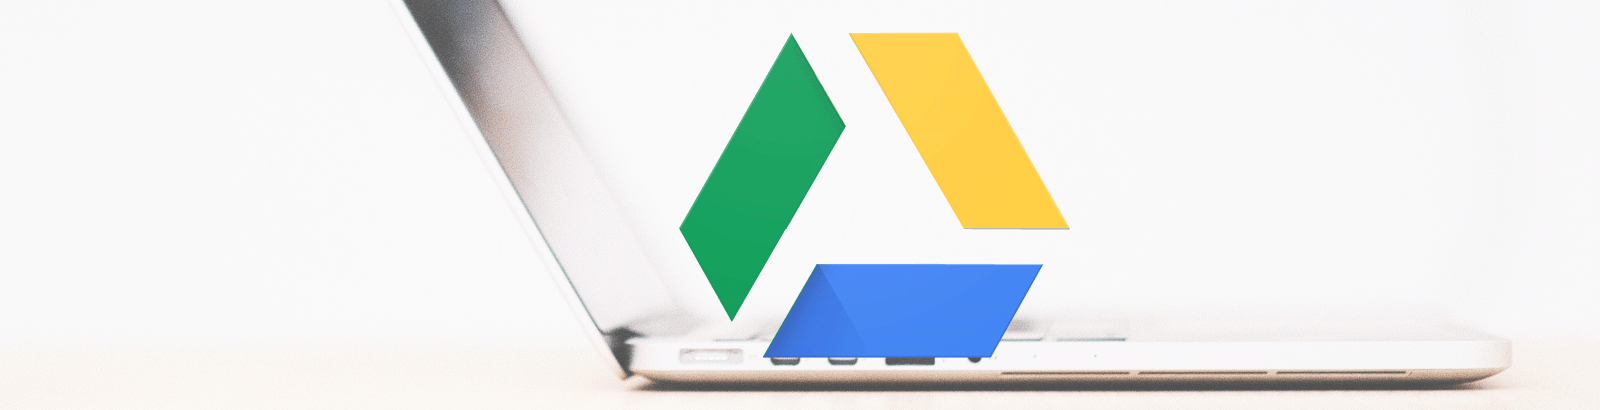 Aplicativo do Google Drive para computador será desativado em 2018. Conheça seu substituto.